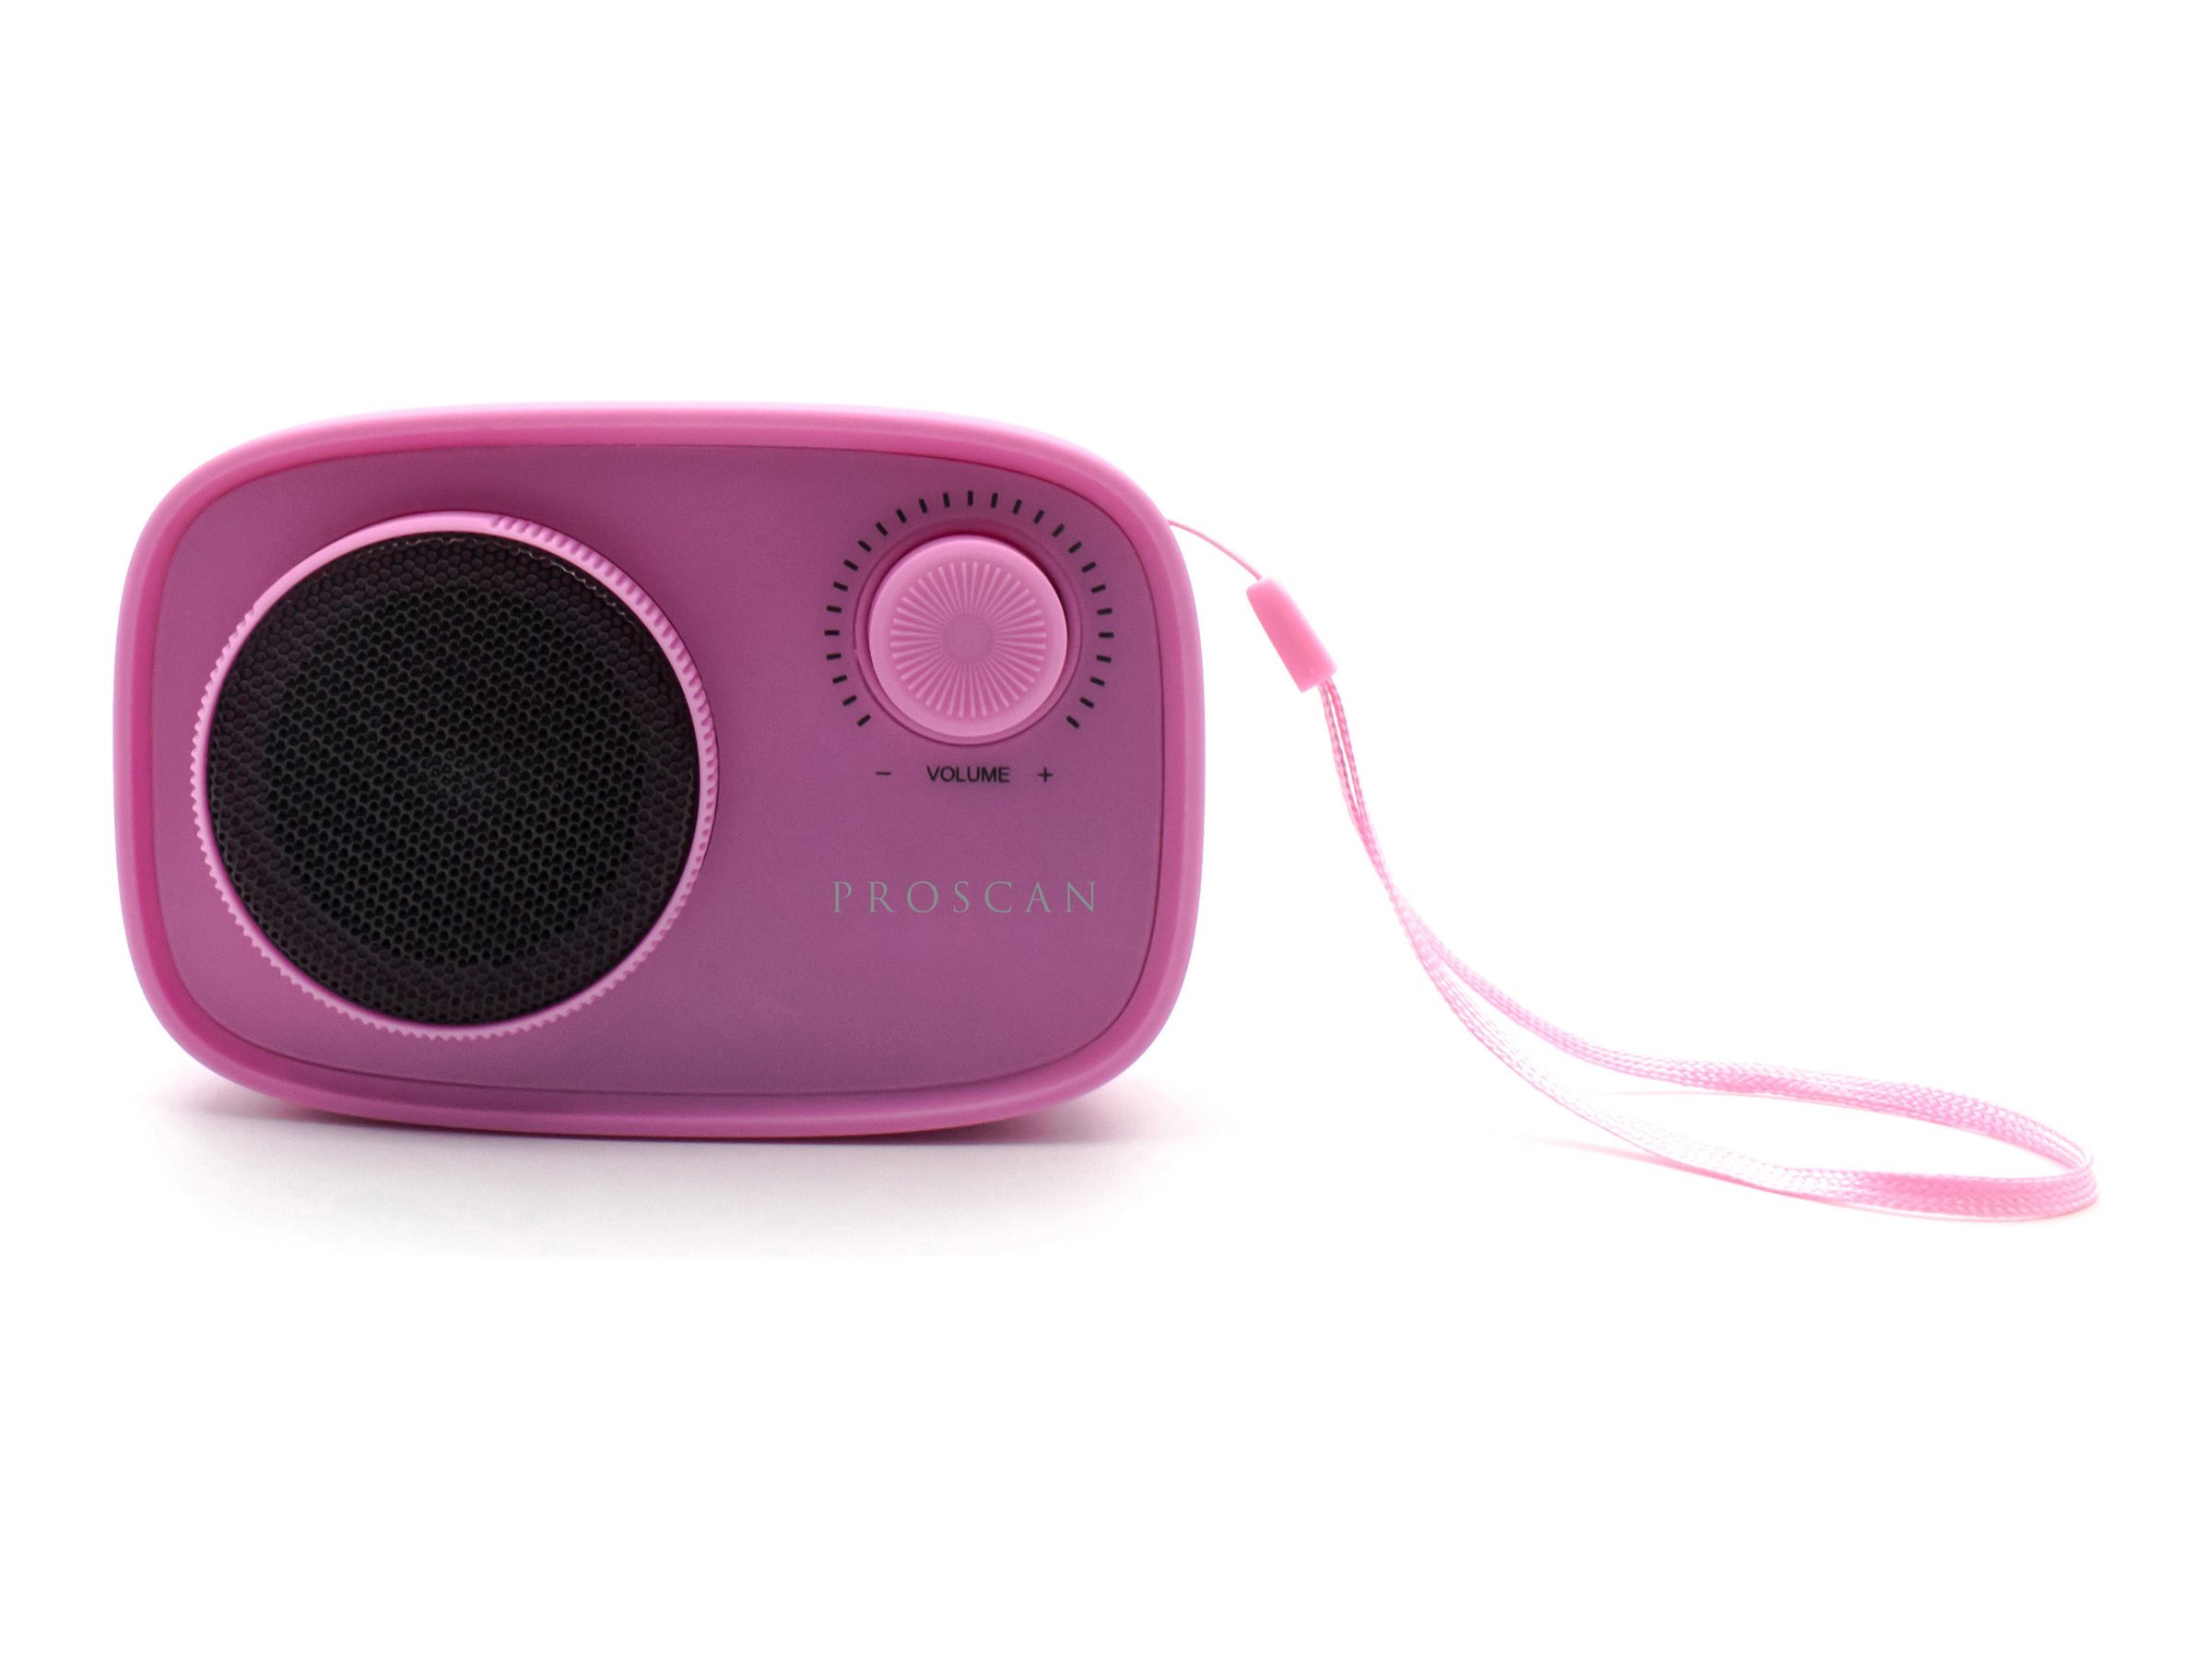 Proscan Bluetooth Speaker - Assorted - PSP1435-ASST